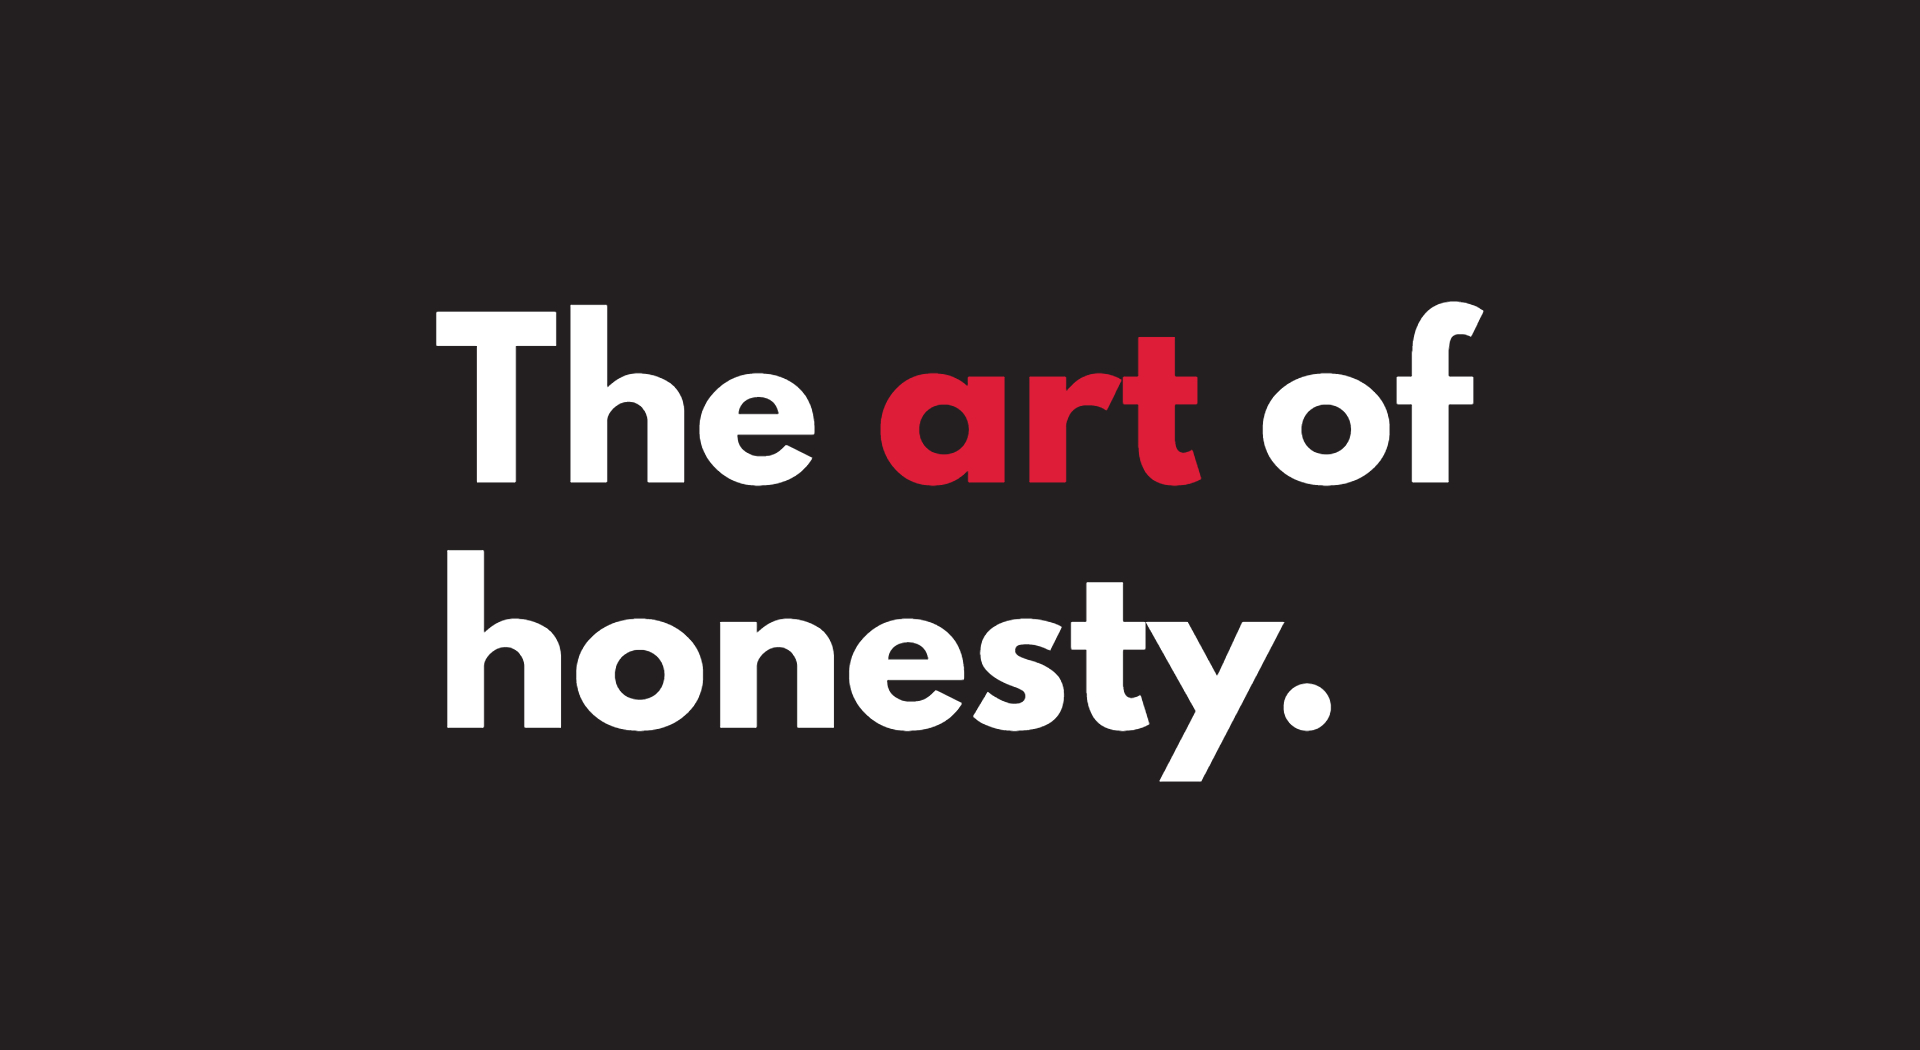 The art of honesty